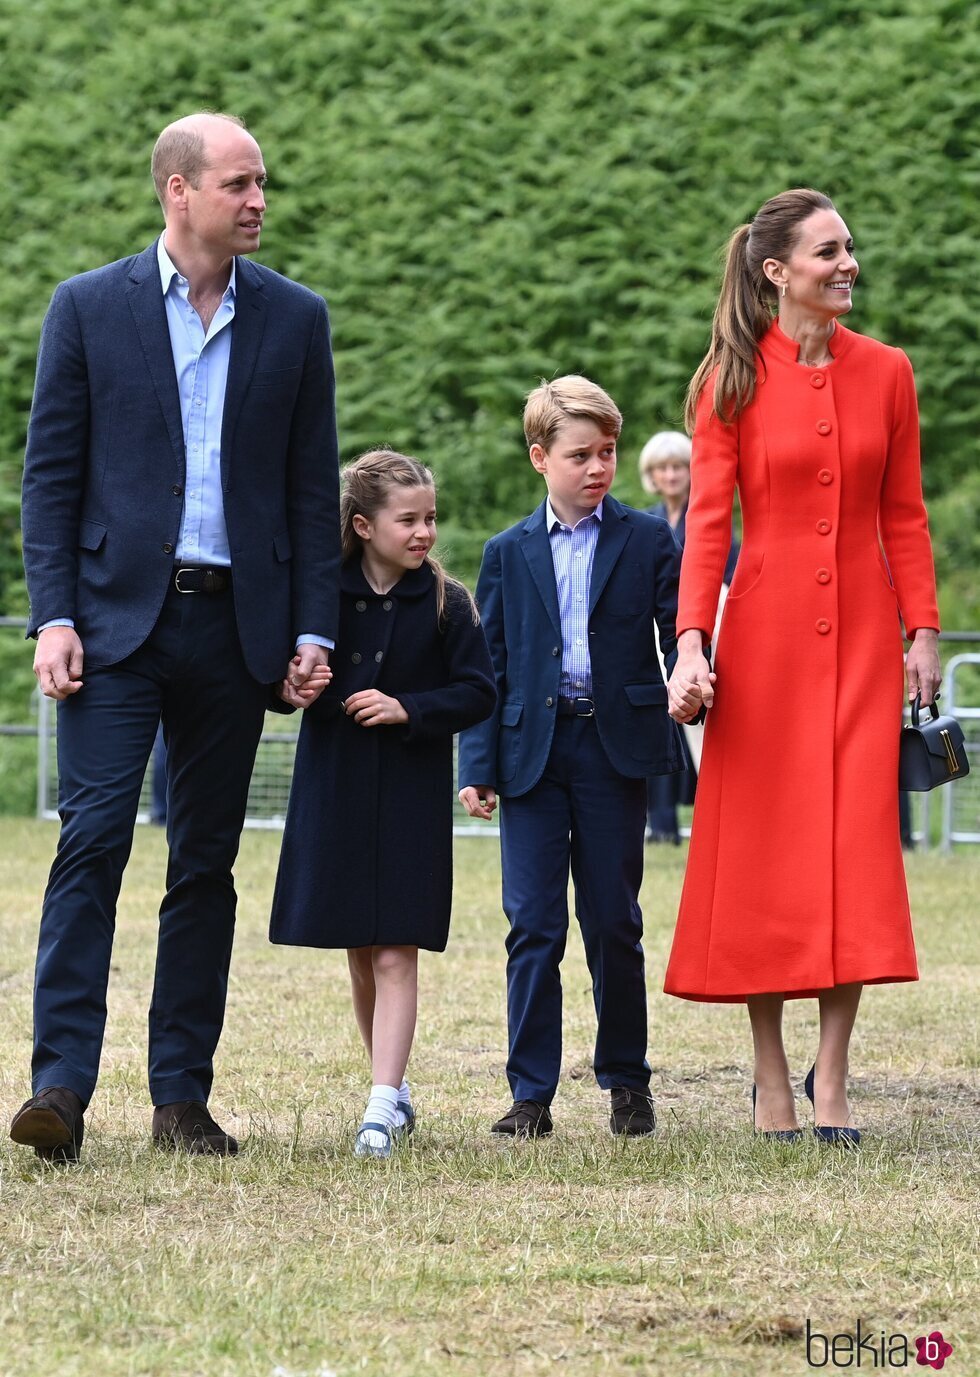 El Príncipe Guillermo y Kate Middleton con sus hijos Jorge y Carlota en Gales por el Jubileo de Platino